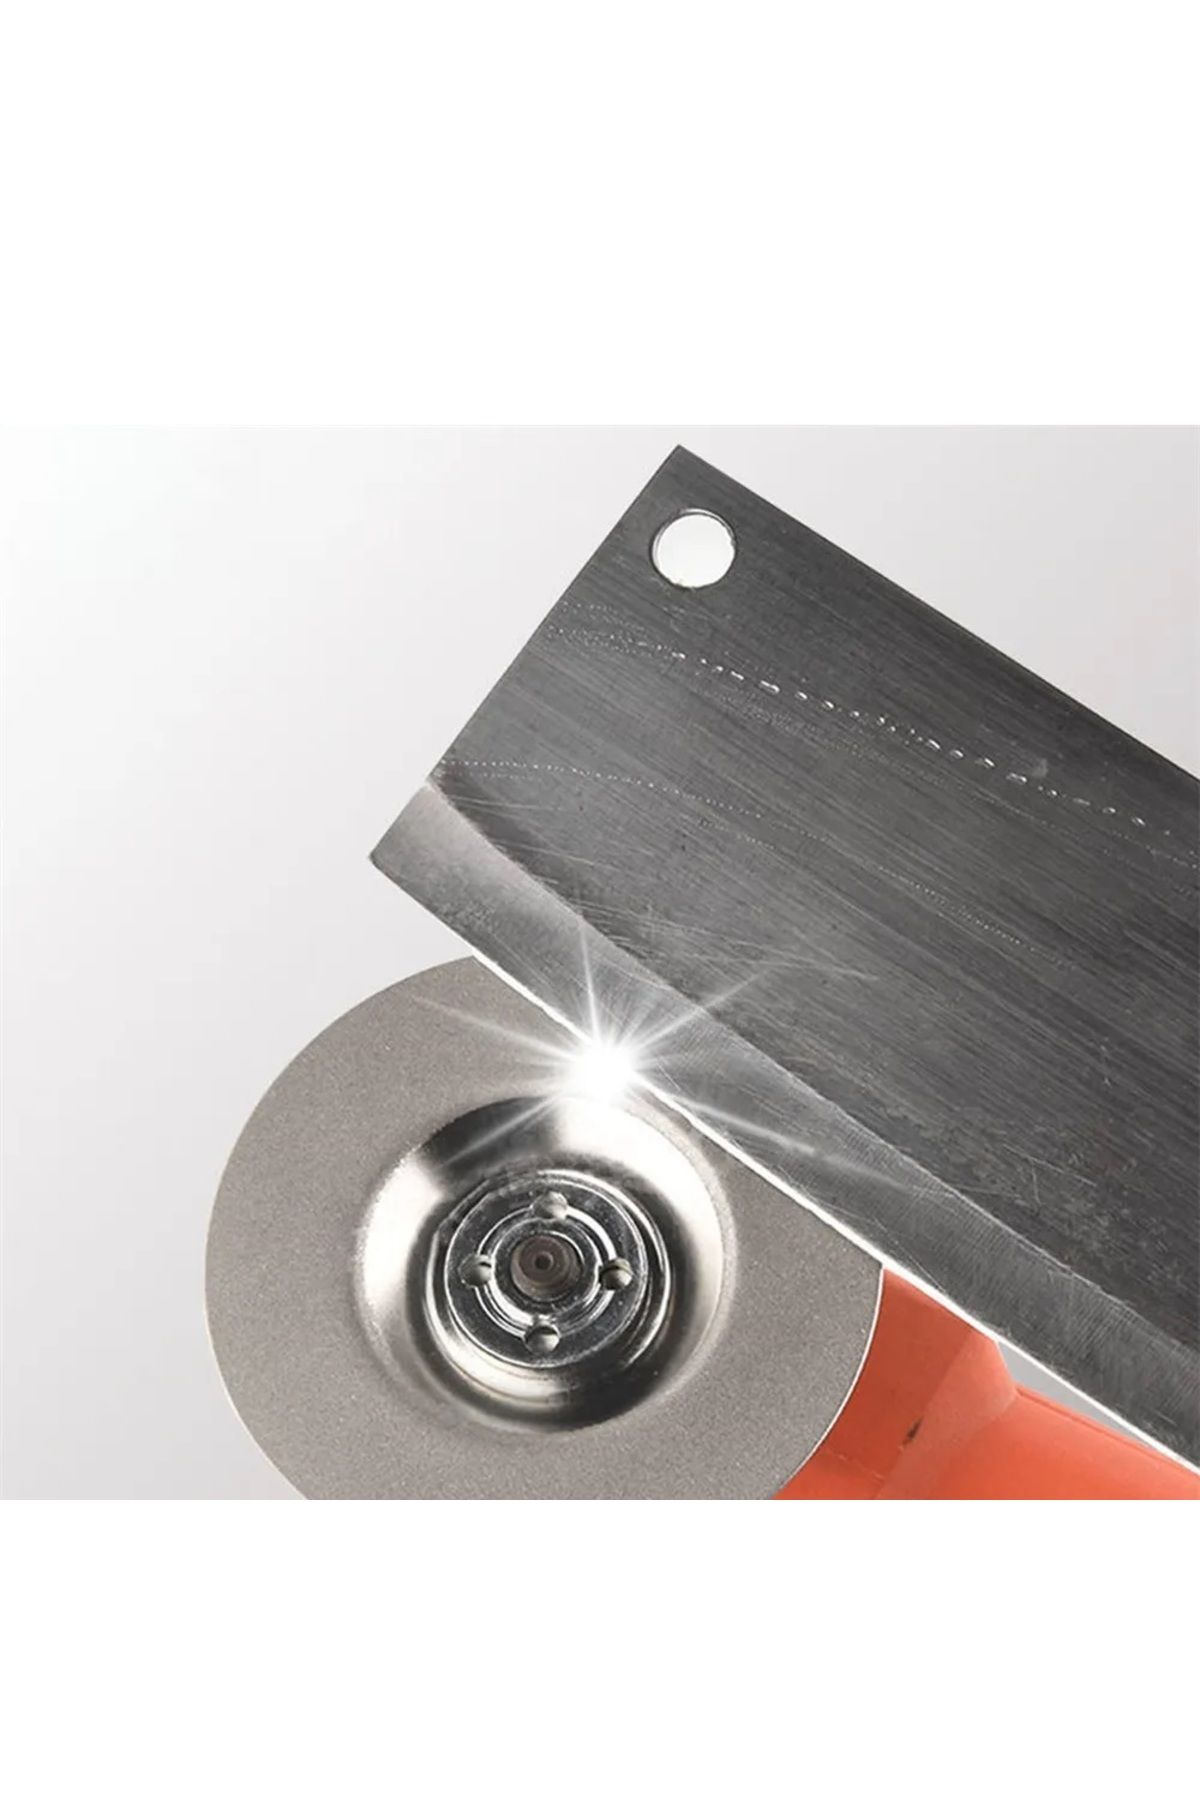 Depolife 100mm elmaslı bileme diski bıçak satır makas bileme diski hassas metal mermer cam zımparalama